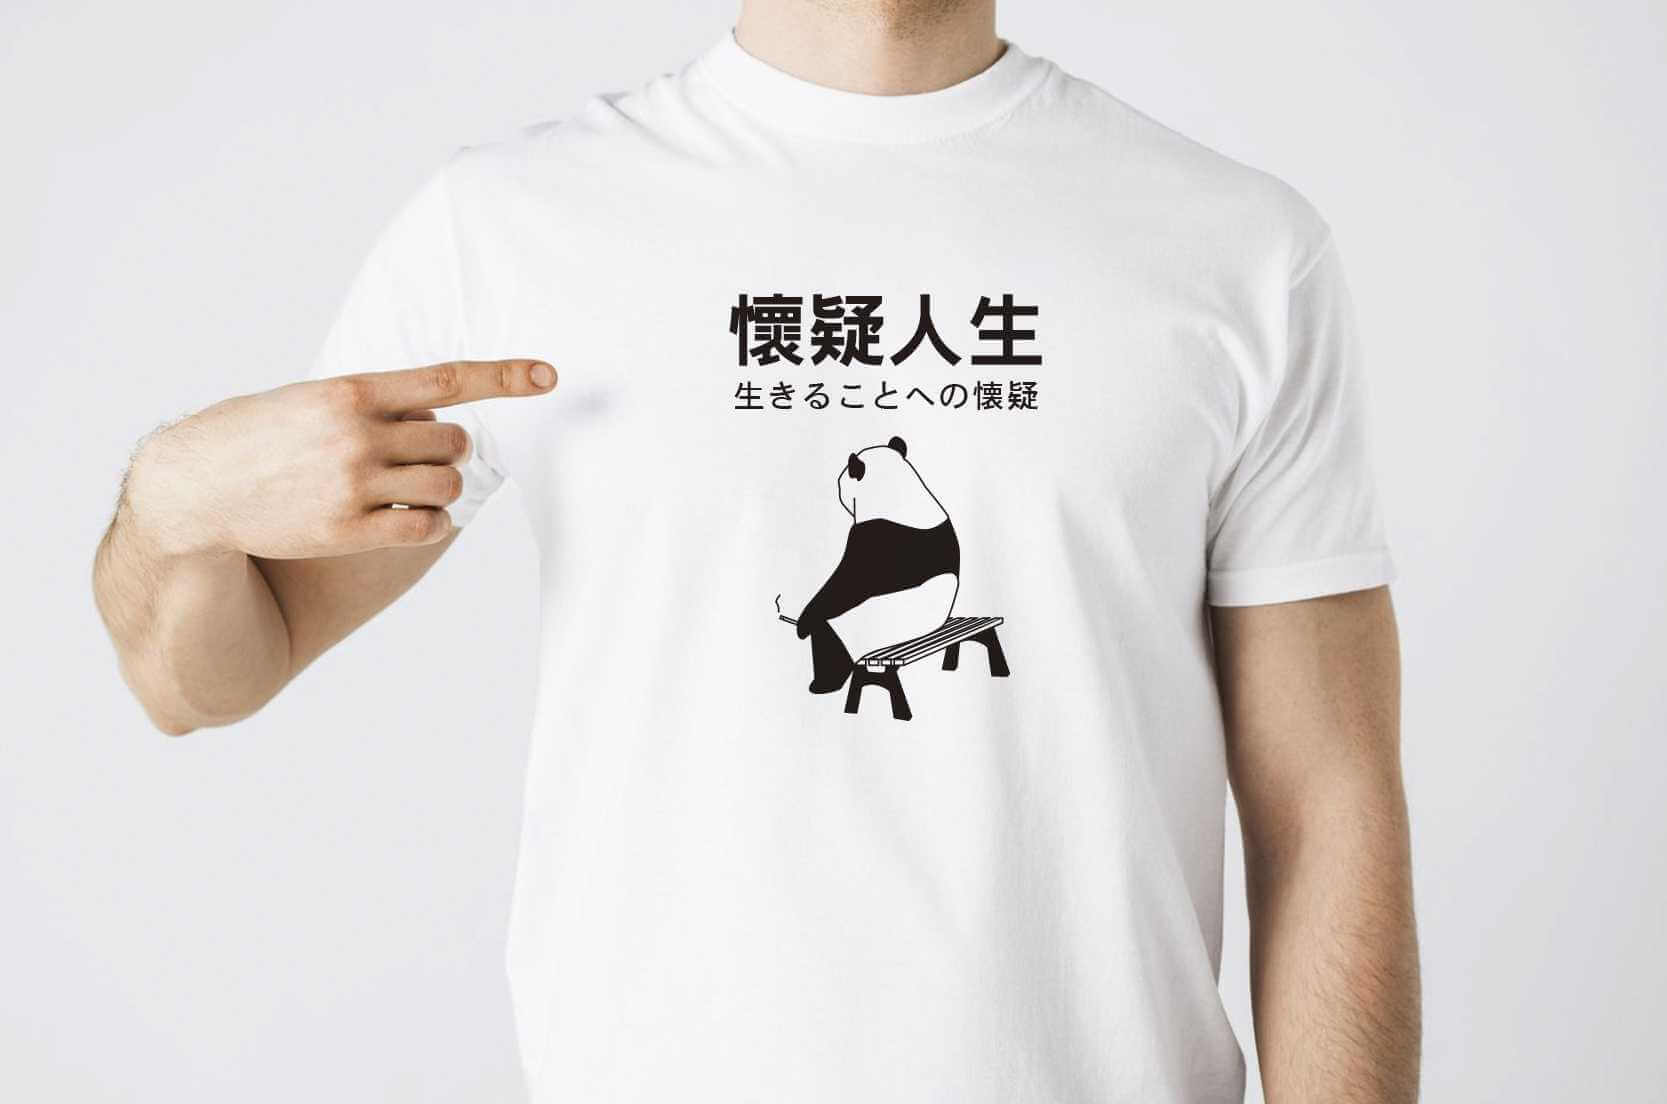 懷疑人生熊貓T恤(白色款)的第1張圖(客製化公司制服、班服製作、團體服製作等示意或作品圖)